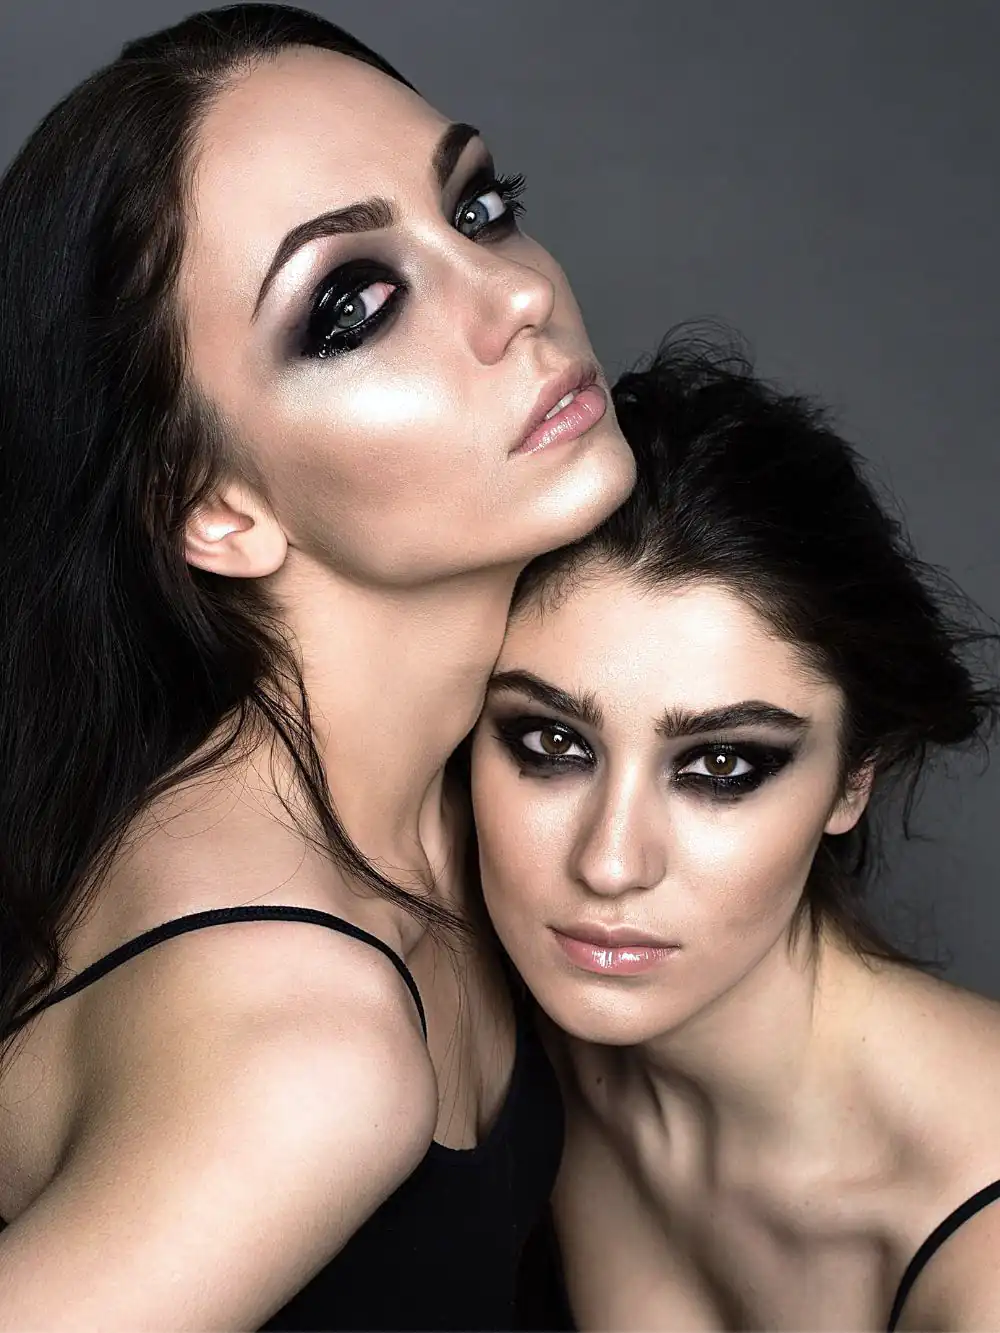 Goth girls wearing makeup